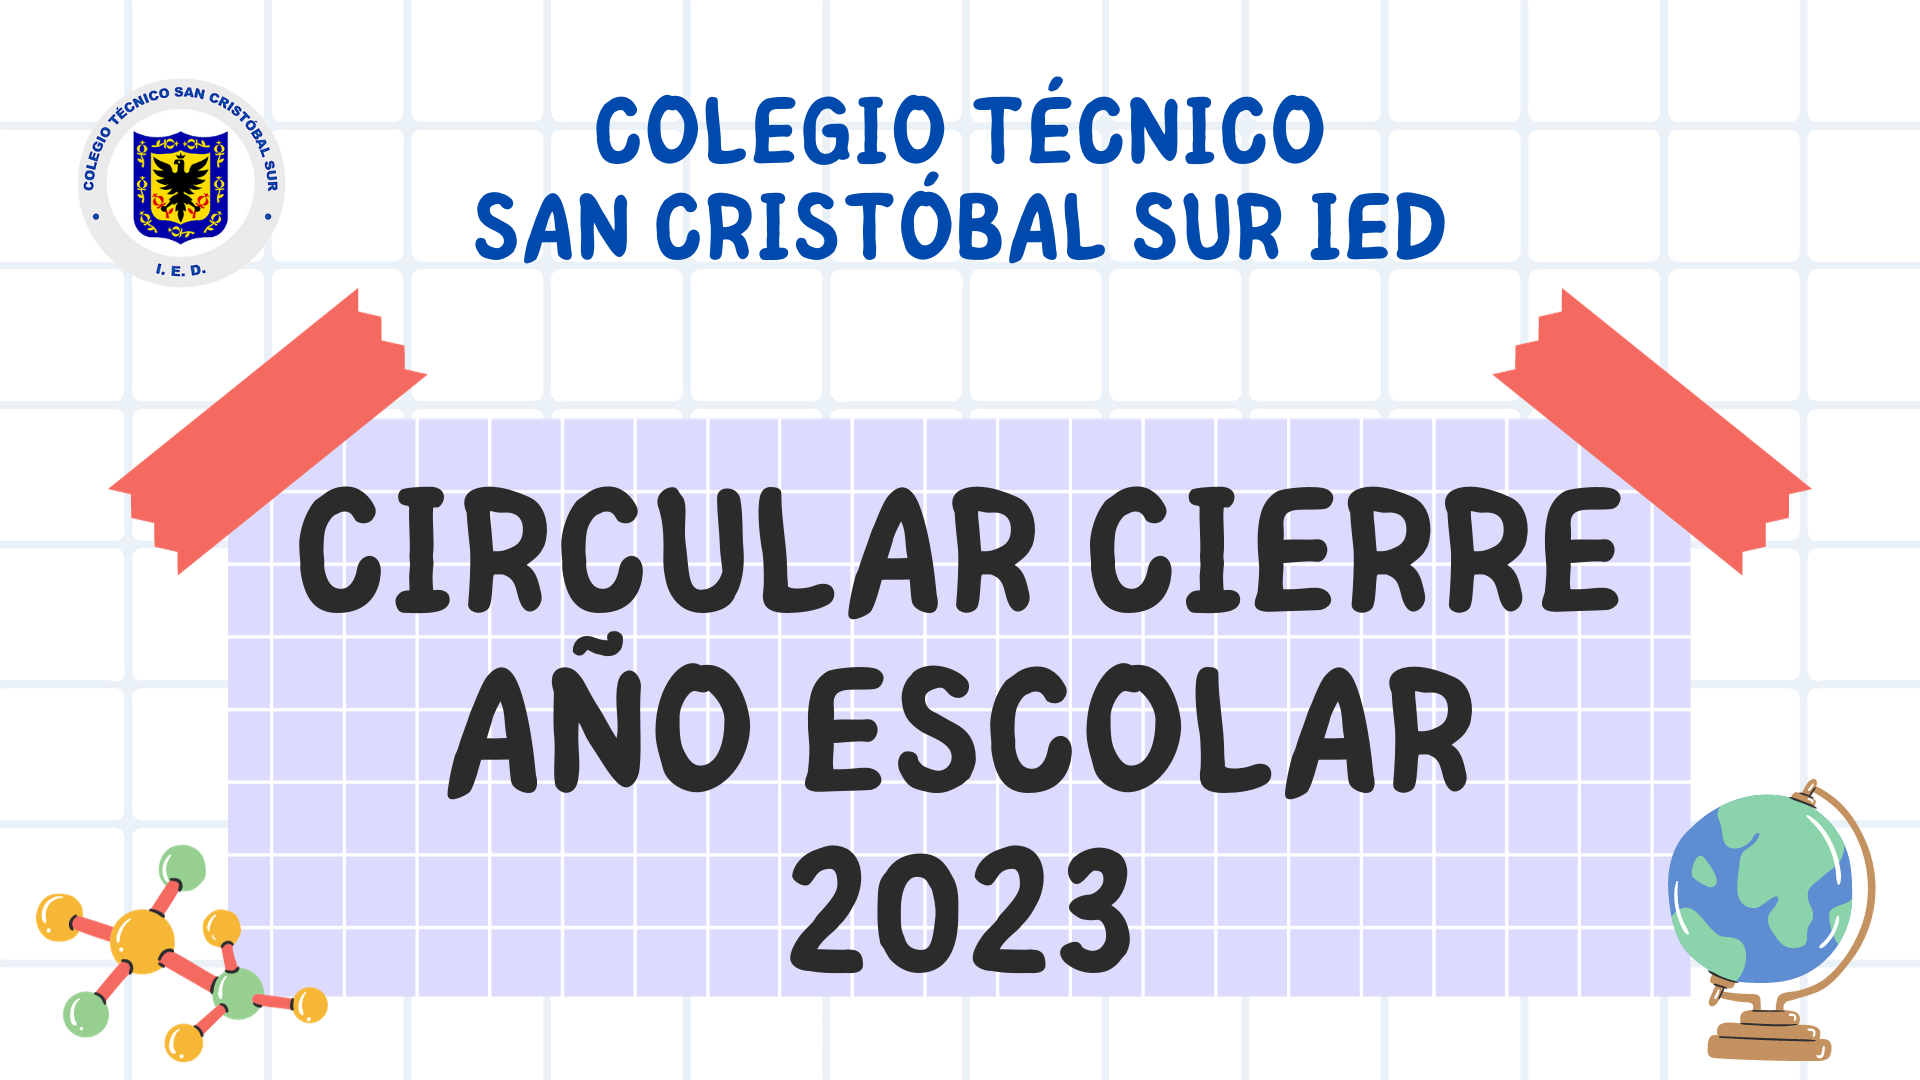 CIRCULAR CIERRE AÑO ESCOLAR 2023